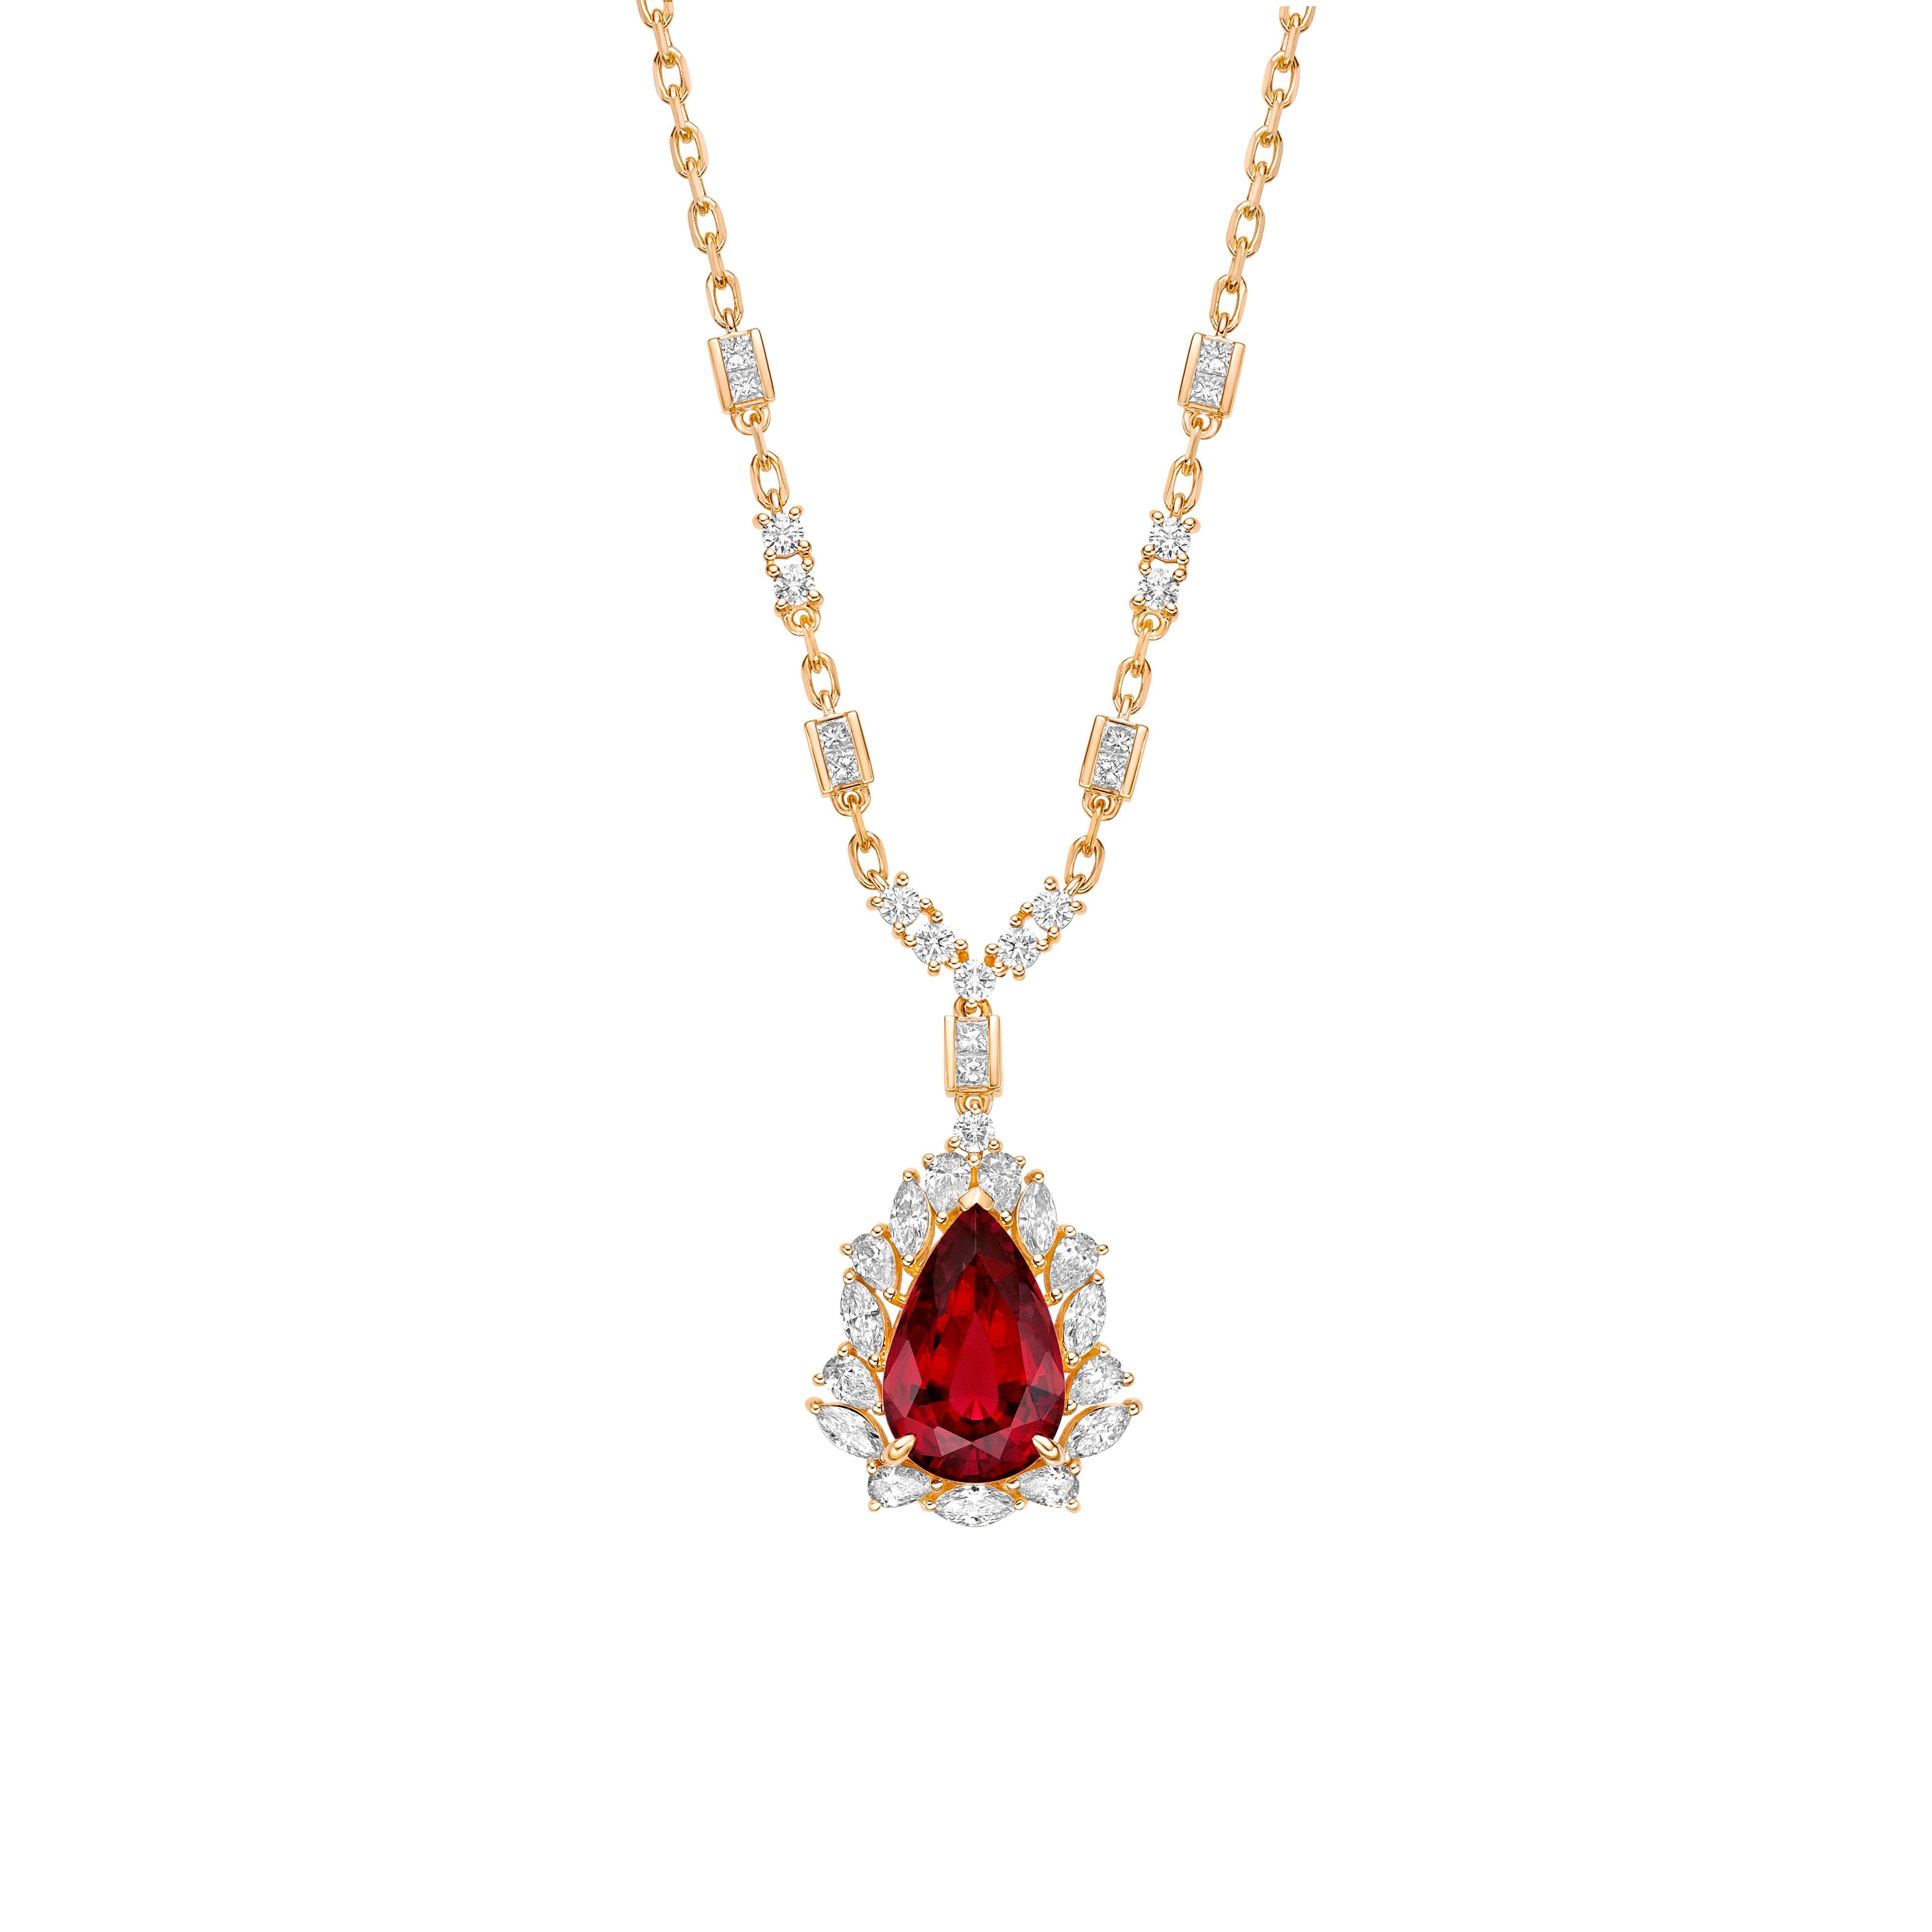 Sunita Nahata präsentiert ein exquisites diamantbesetztes Rubellit-Schmuckset, das Anmut und Eleganz ausstrahlt. Dieses exquisite Set aus 18 Karat Gelbgold ist ideal für jeden besonderen Anlass, denn es verbindet traditionelle Eleganz mit modernem